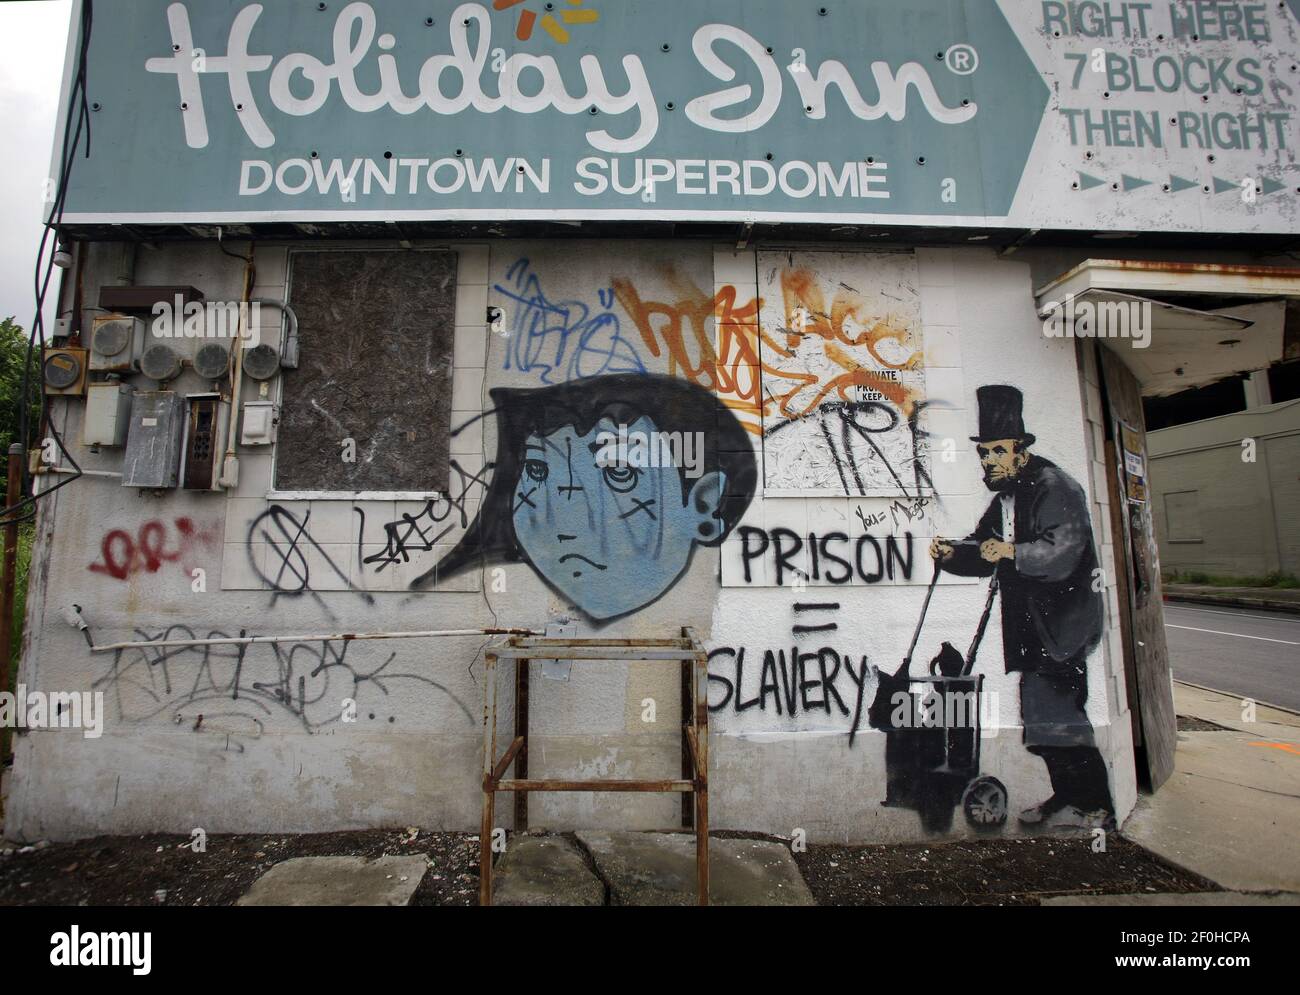 31 mai 2010 - Nouvelle-Orléans, Louisiane - Banksy Street graffiti de Lincoln comme un vagabond sans-abri dans le centre-ville de la Nouvelle-Orléans. Le bâtiment a depuis été démoli. Il est impossible de savoir si une partie de la plaque a été enregistrée. Banksy a visité la ville en 2008. (Photo de Charlie Varley/Sipa USA) Banque D'Images